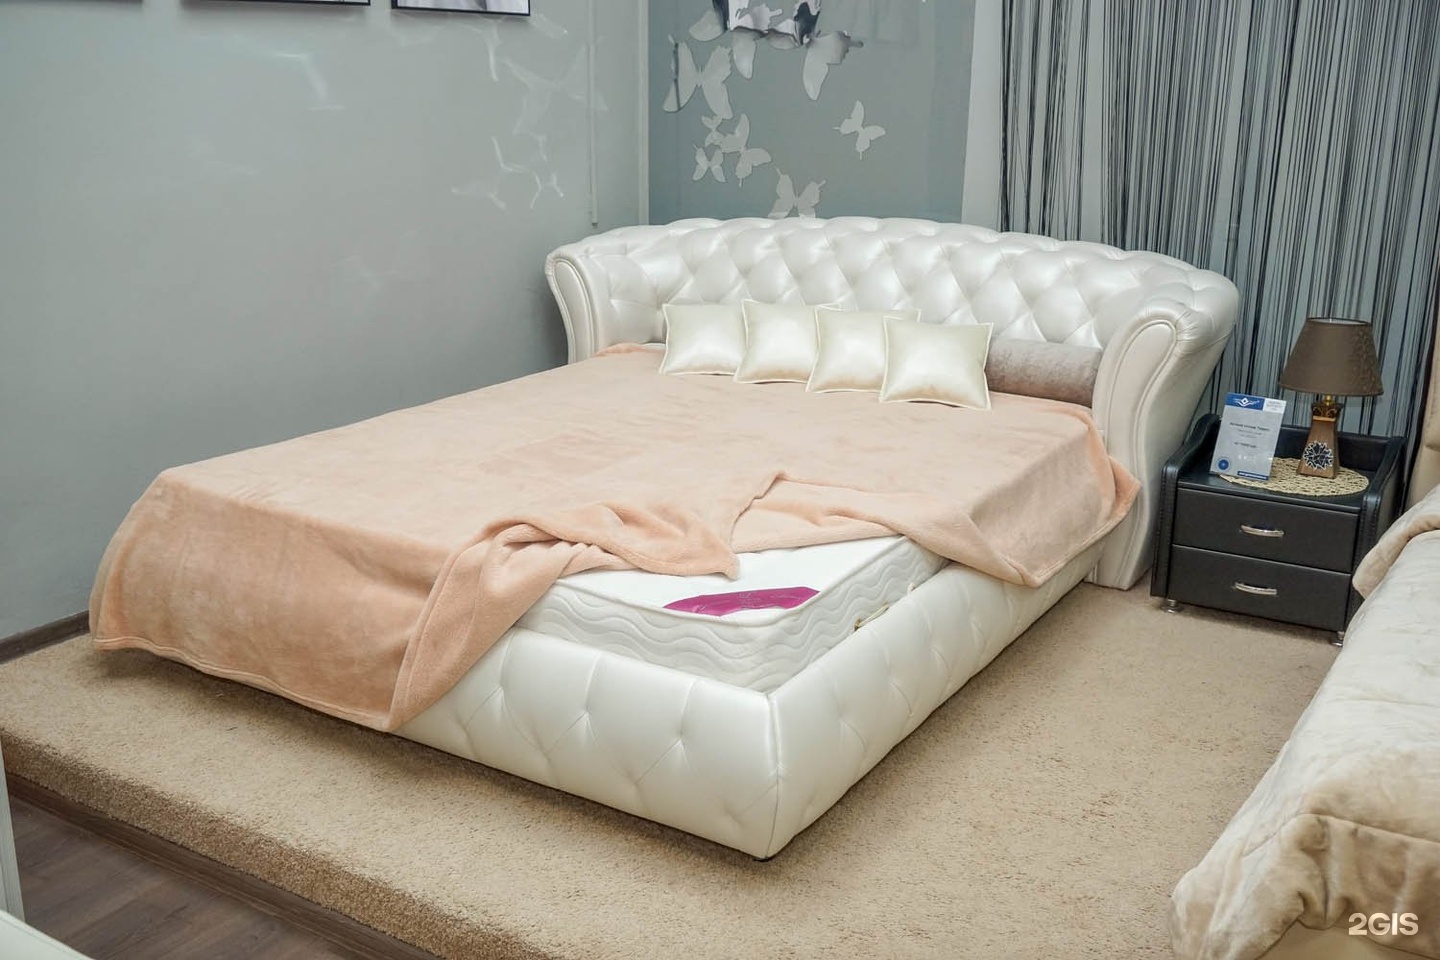 Купить кровать киров недорого. Кровать Tatami Гармония. Кровать Орхидея. Салон кроватей. Салон кроватей и матрасов.